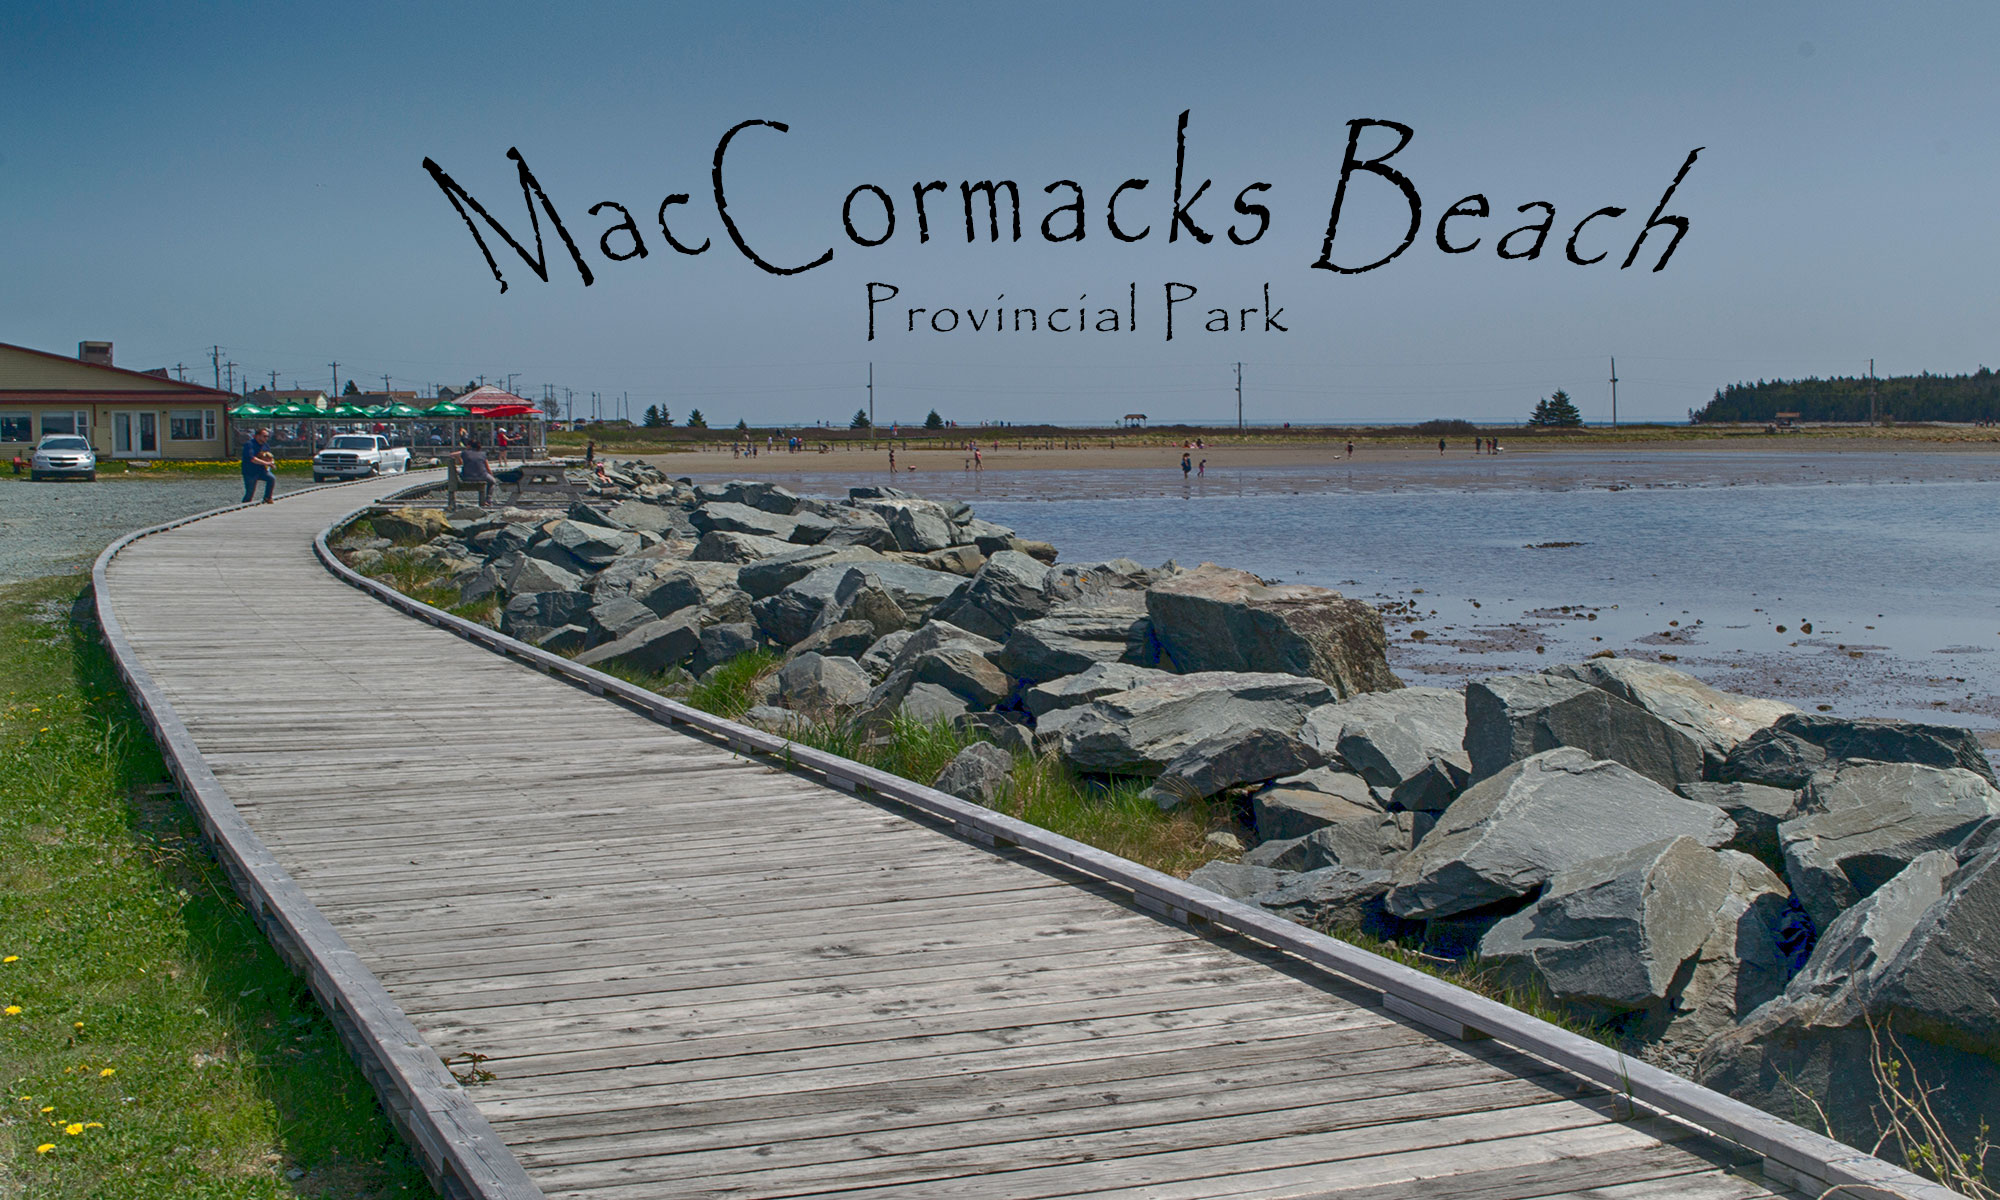 MacCormacks Beach Provincial Park